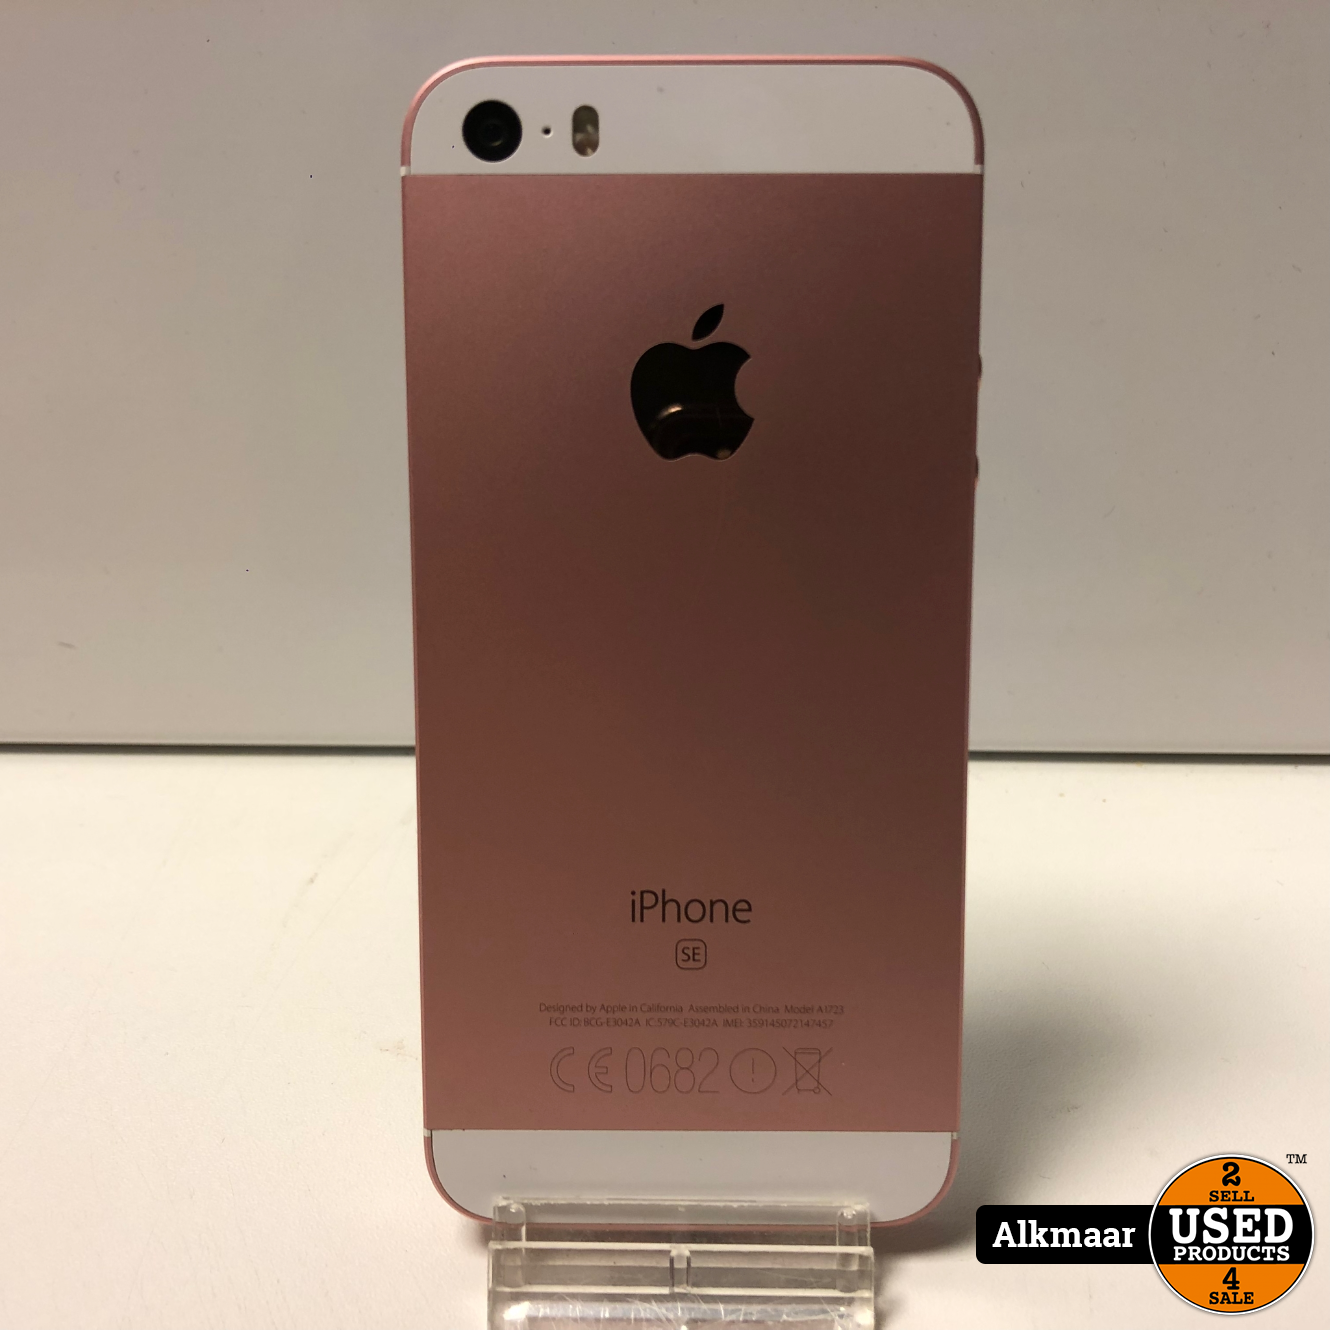 Subtropisch Stroomopwaarts software Apple iPhone SE 64GB Rose Gold | Nette staat! - Used Products Alkmaar